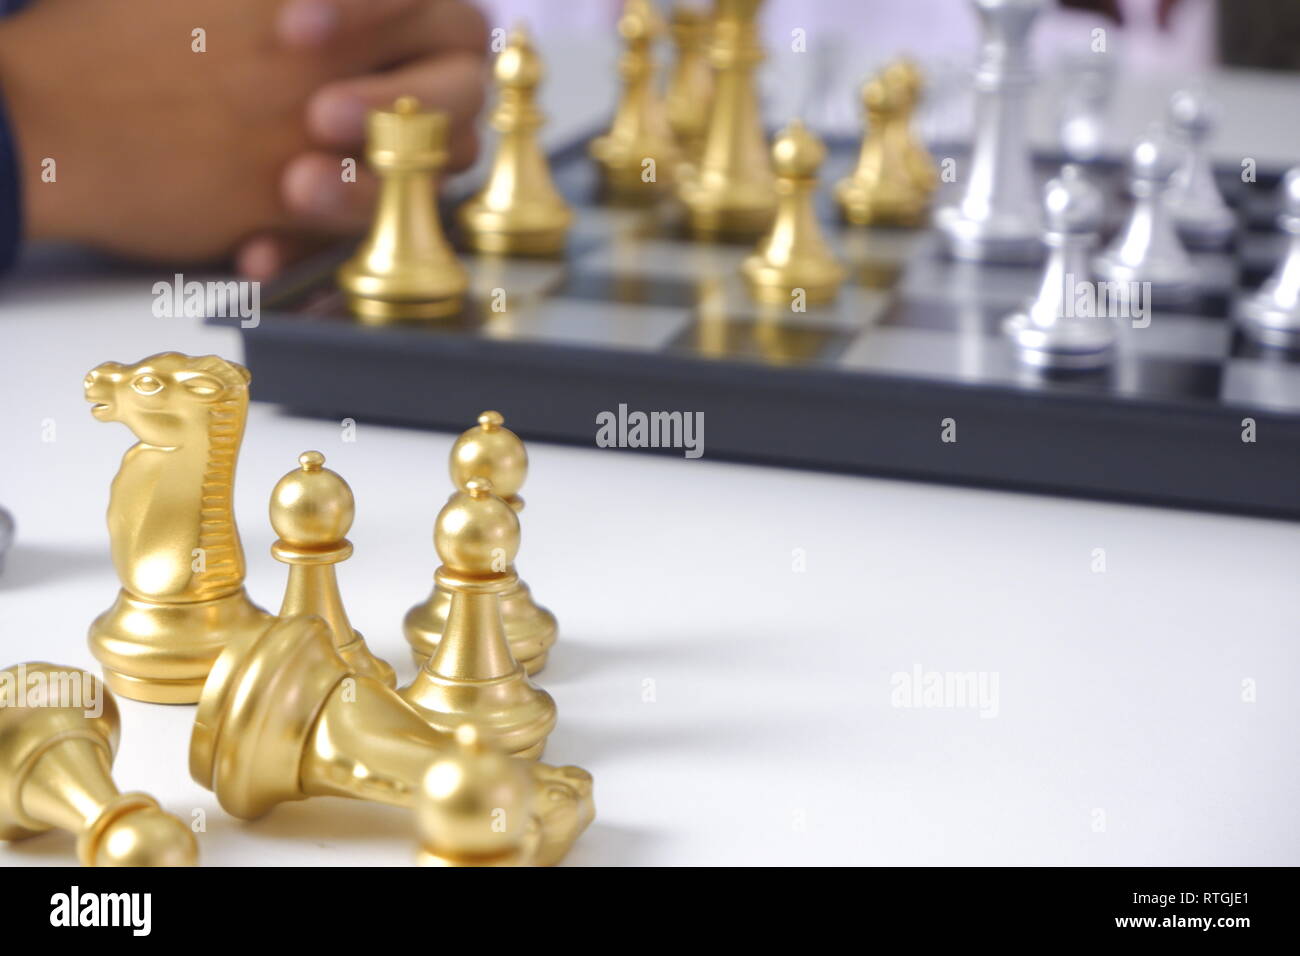 Businessman playing Chess game ; stratégie d'affaires, concept de leadership et de gestion. Banque D'Images